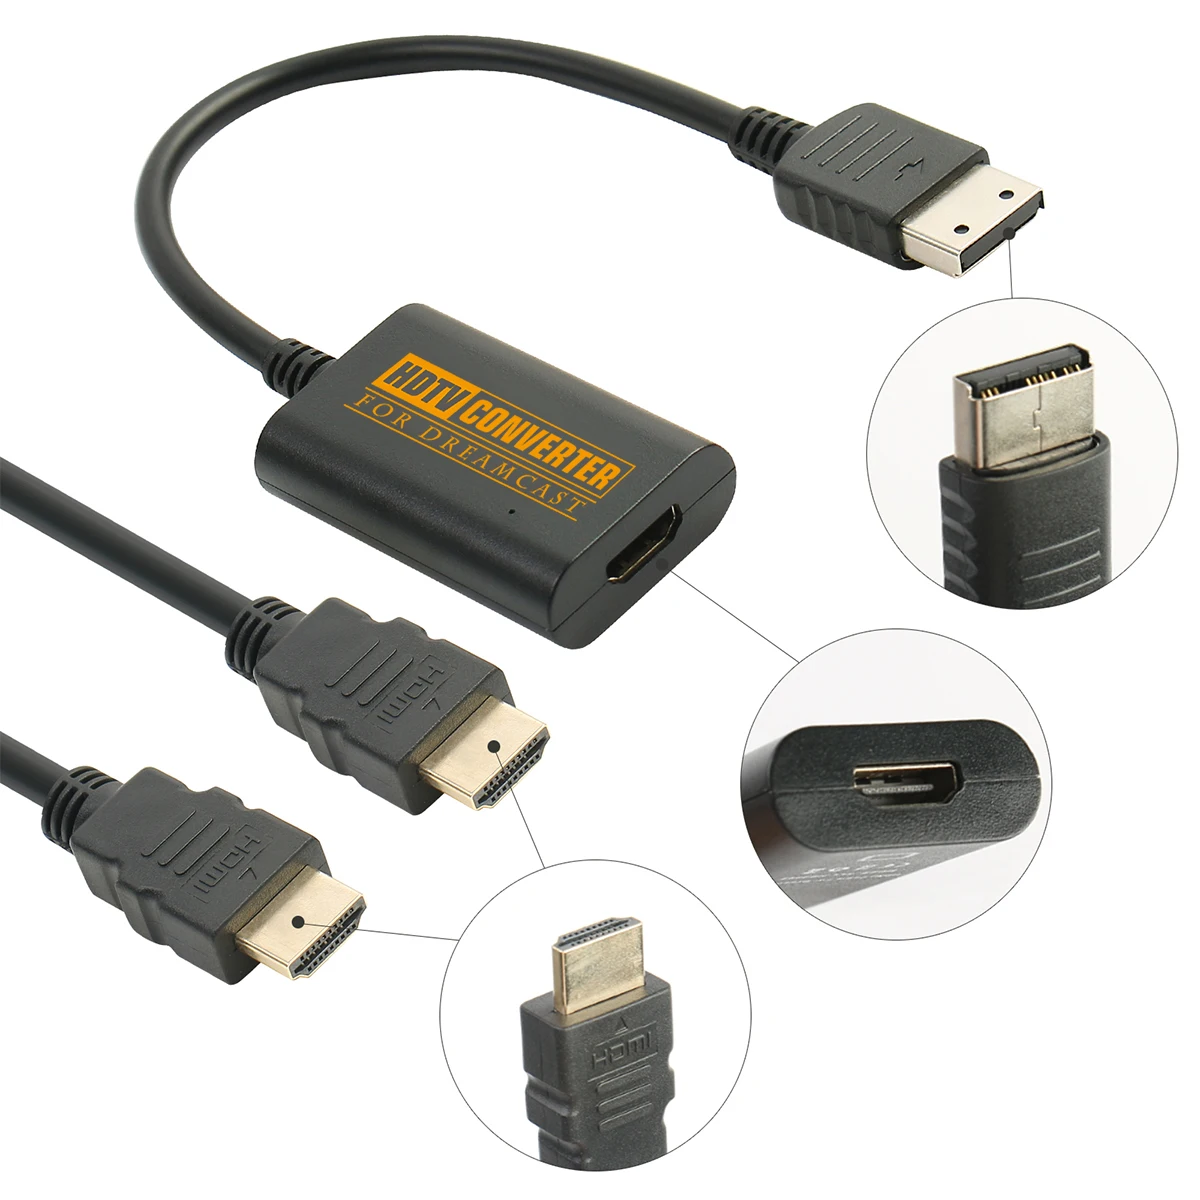 

Адаптер HDMI для игровых консолей Sega Dreamcast в стиле ретро, кабель HD-Link поддерживает режимы отображения NTSC 480i, 480p, PAL 576i